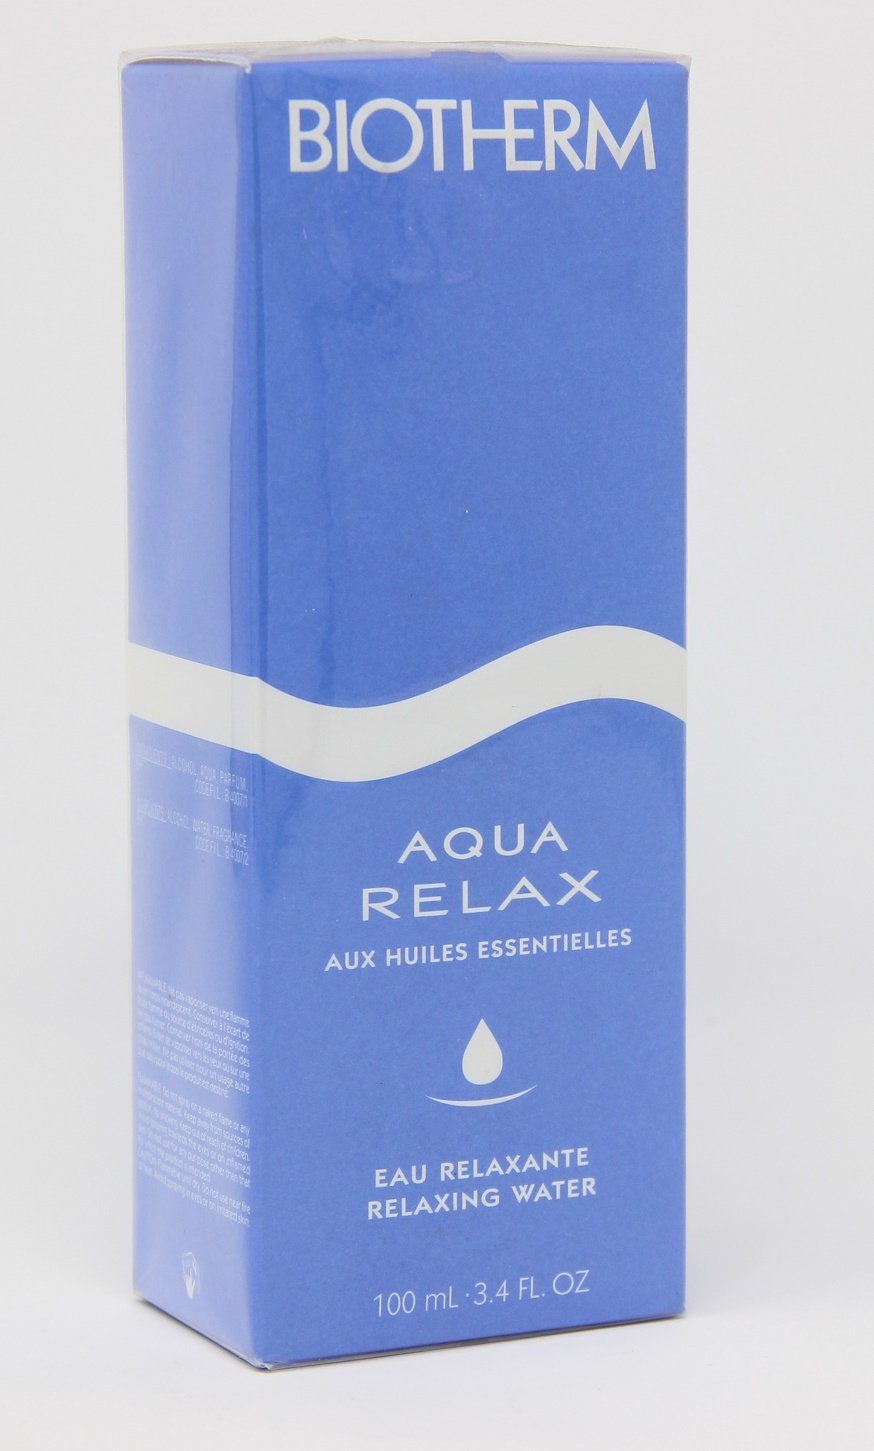 BIOTHERM Selbstbräunungstücher Aqua oils Relax essential water 100ml Biotherm relaxing